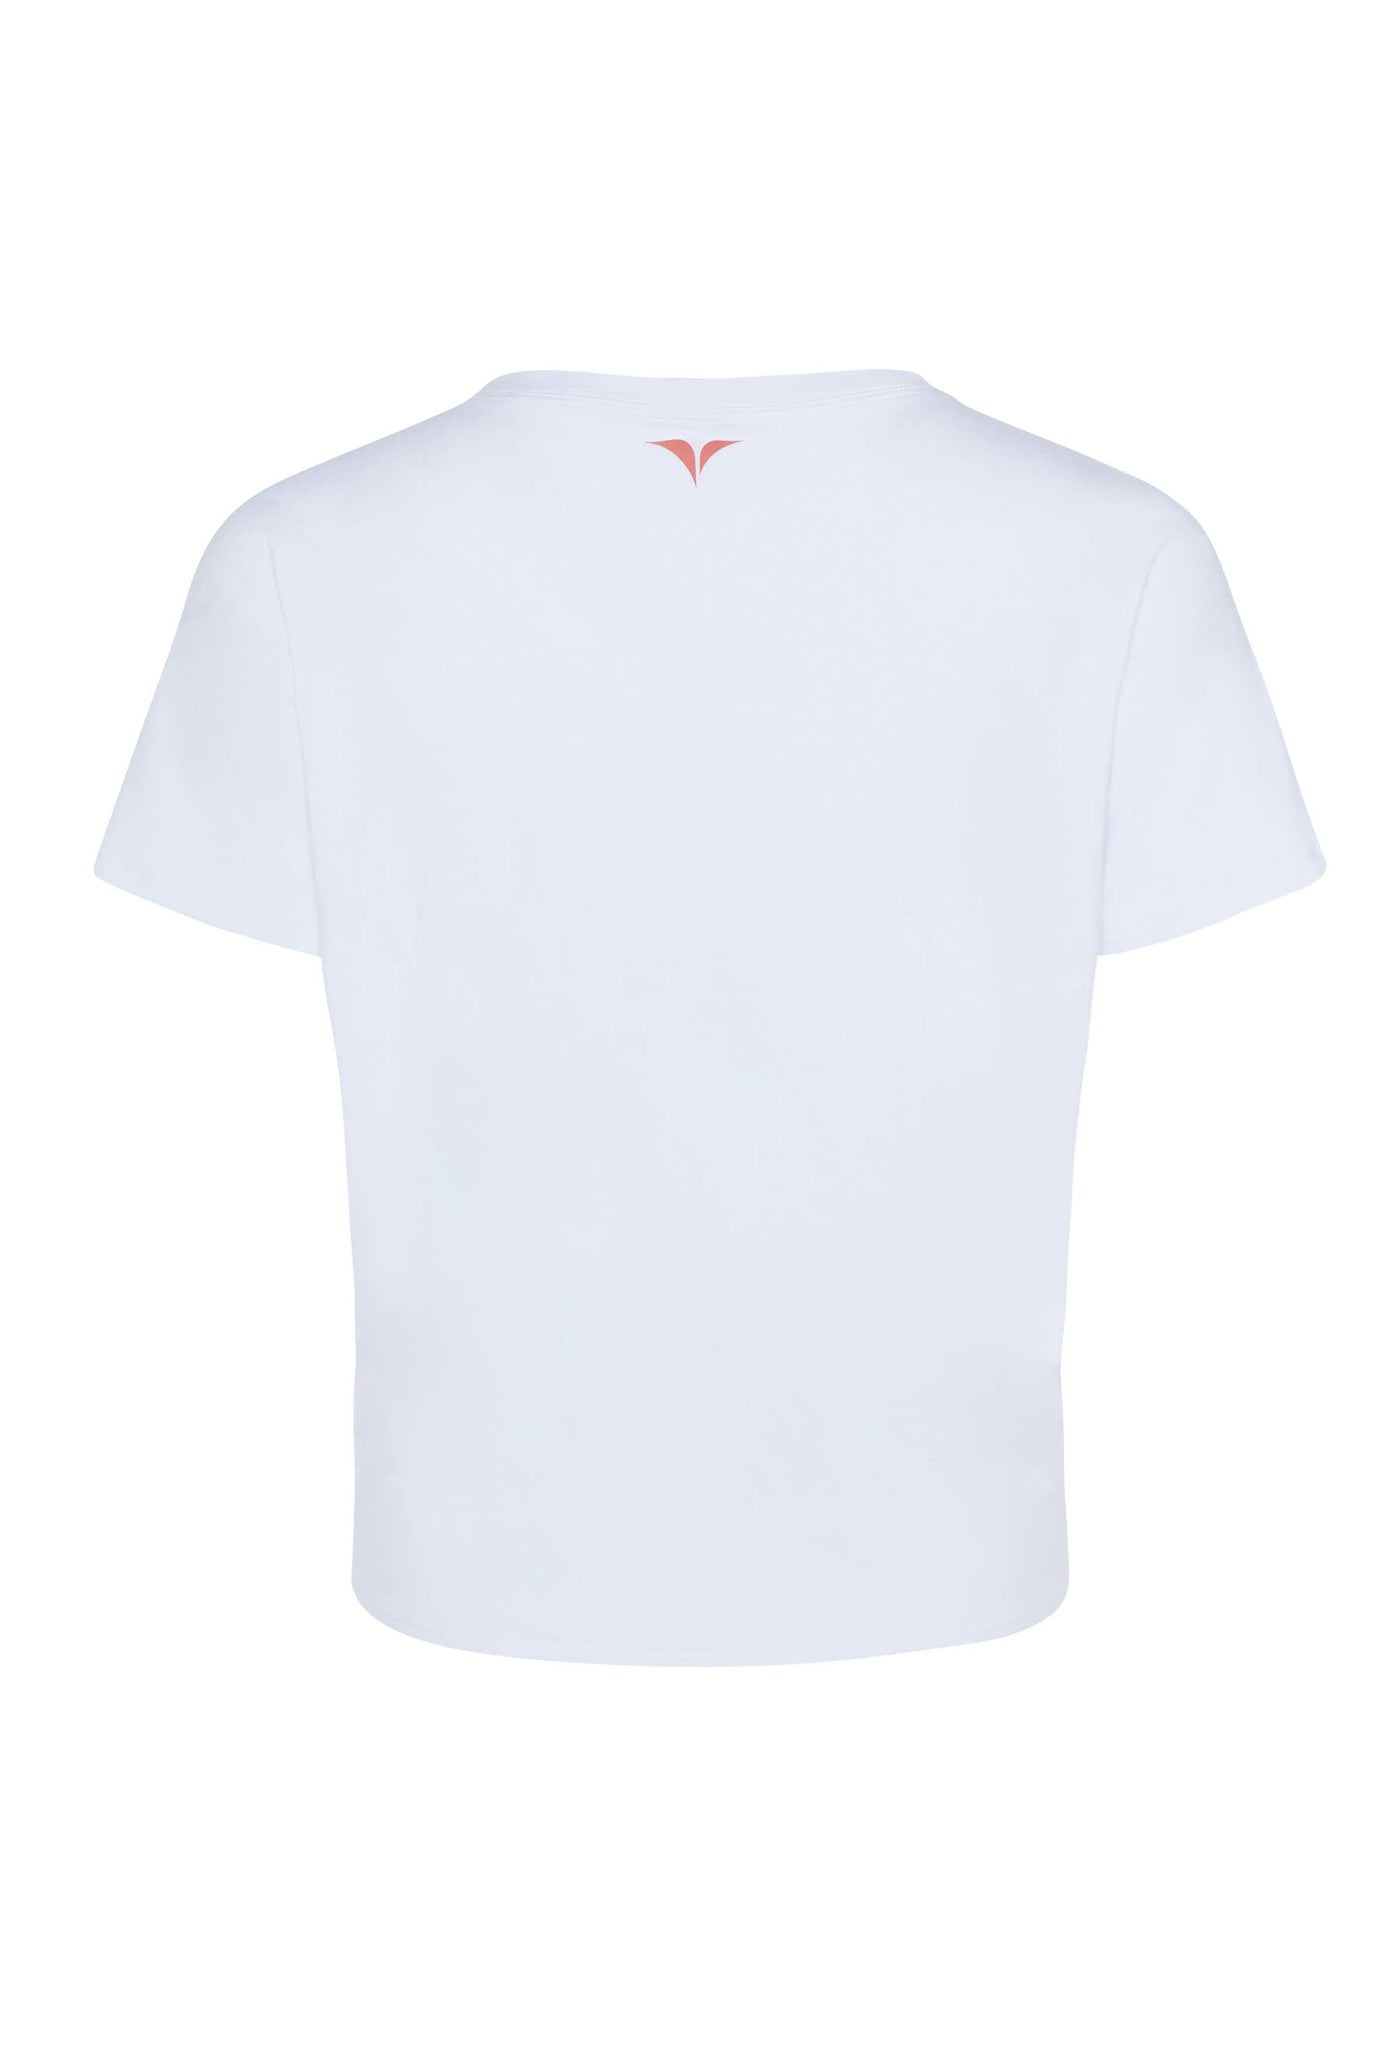 Noa - T-shirt imprimé et noué à l’avant blanc